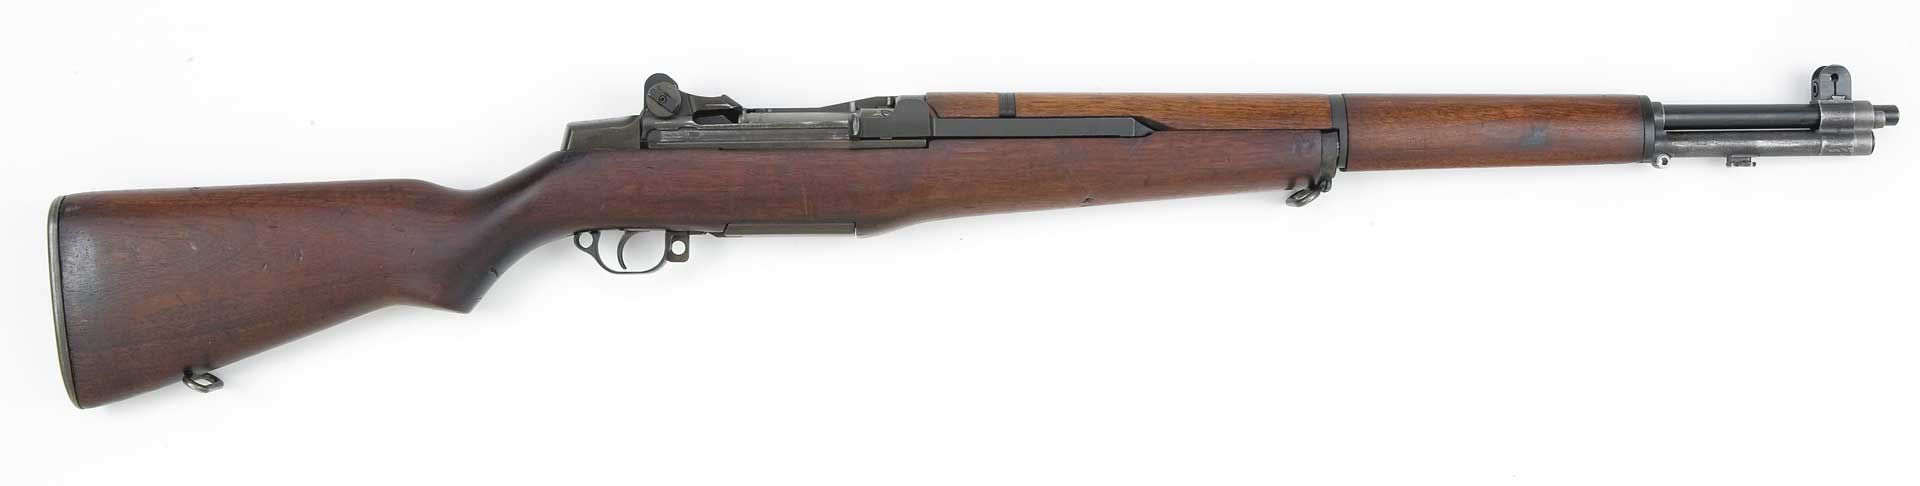 Right side wood rifle brown gun M1 Garand